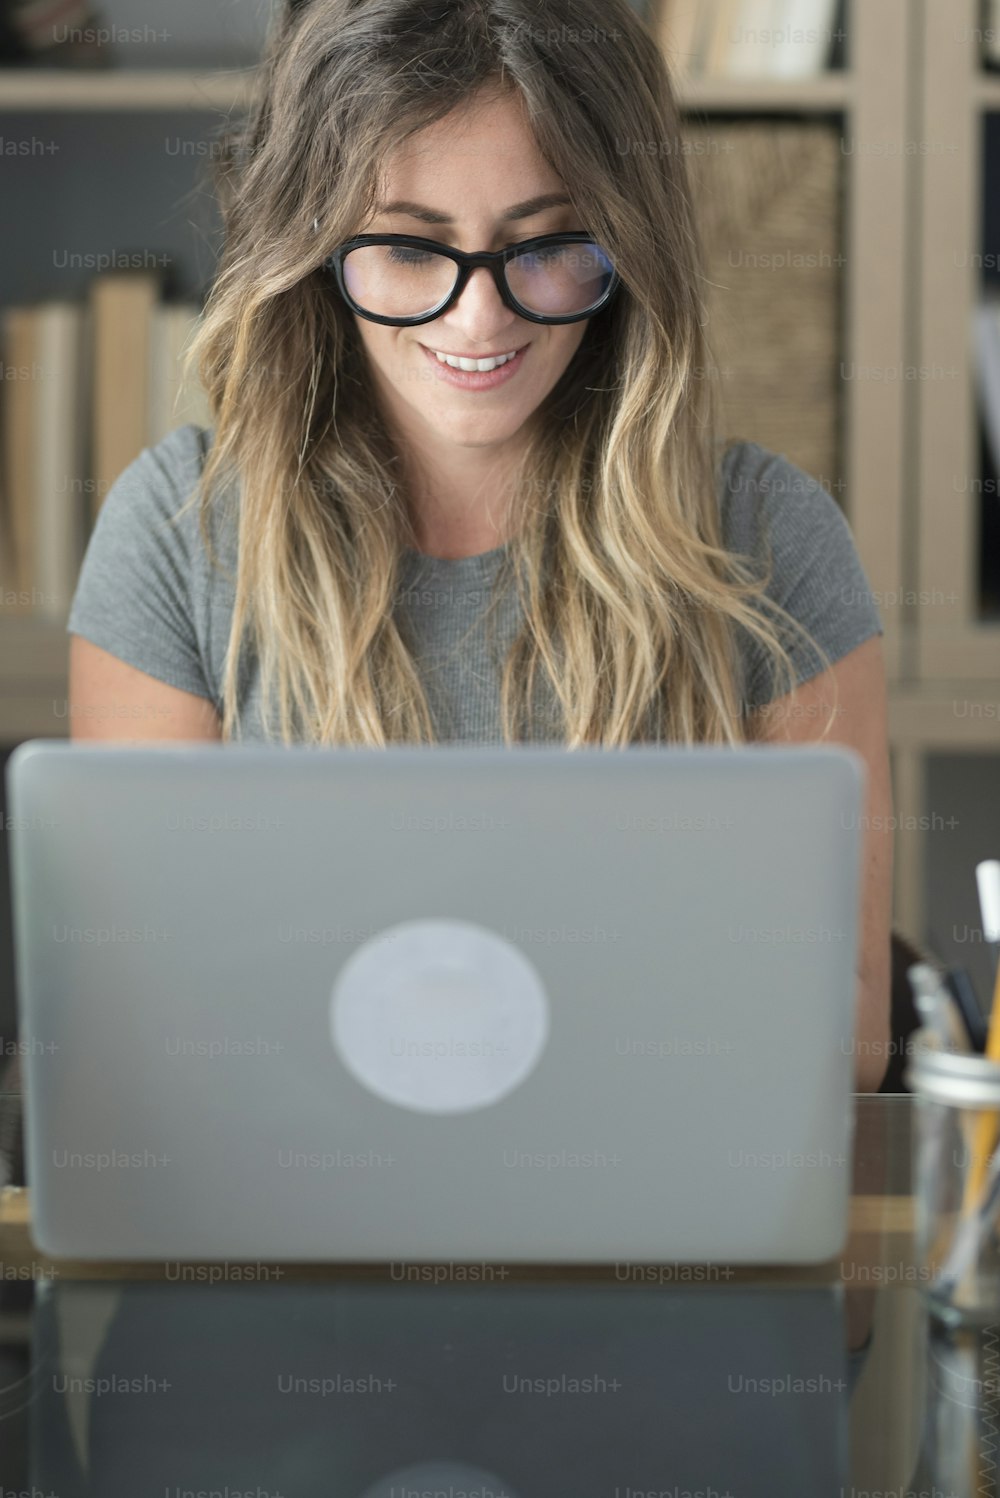 Jolie femme avec des lunettes de lunettes travail à la maison sur ordinateur portable - femmes intelligentes travaillant au bureau regardant le moniteur - travail professionnel moderne concept de style de vie indépendant